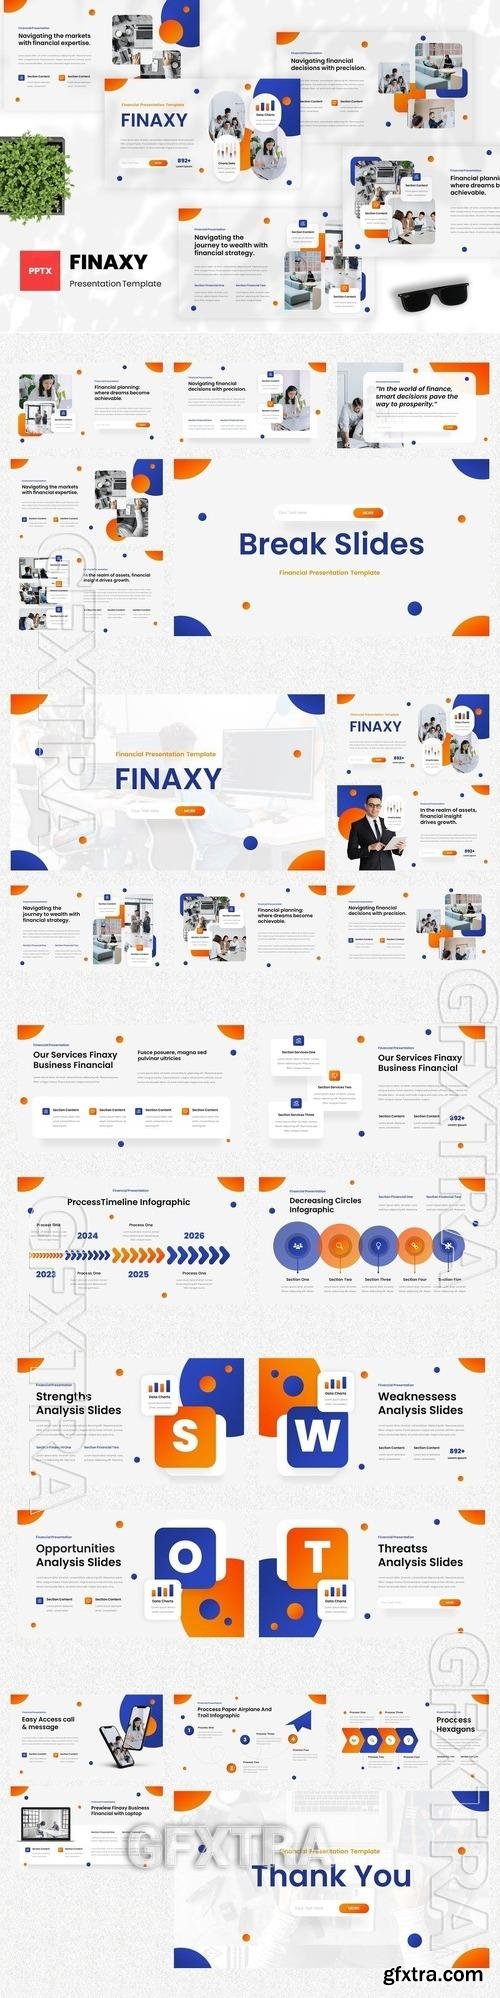 Finaxy - Financial Powerpoint Template 8KK8AVJ